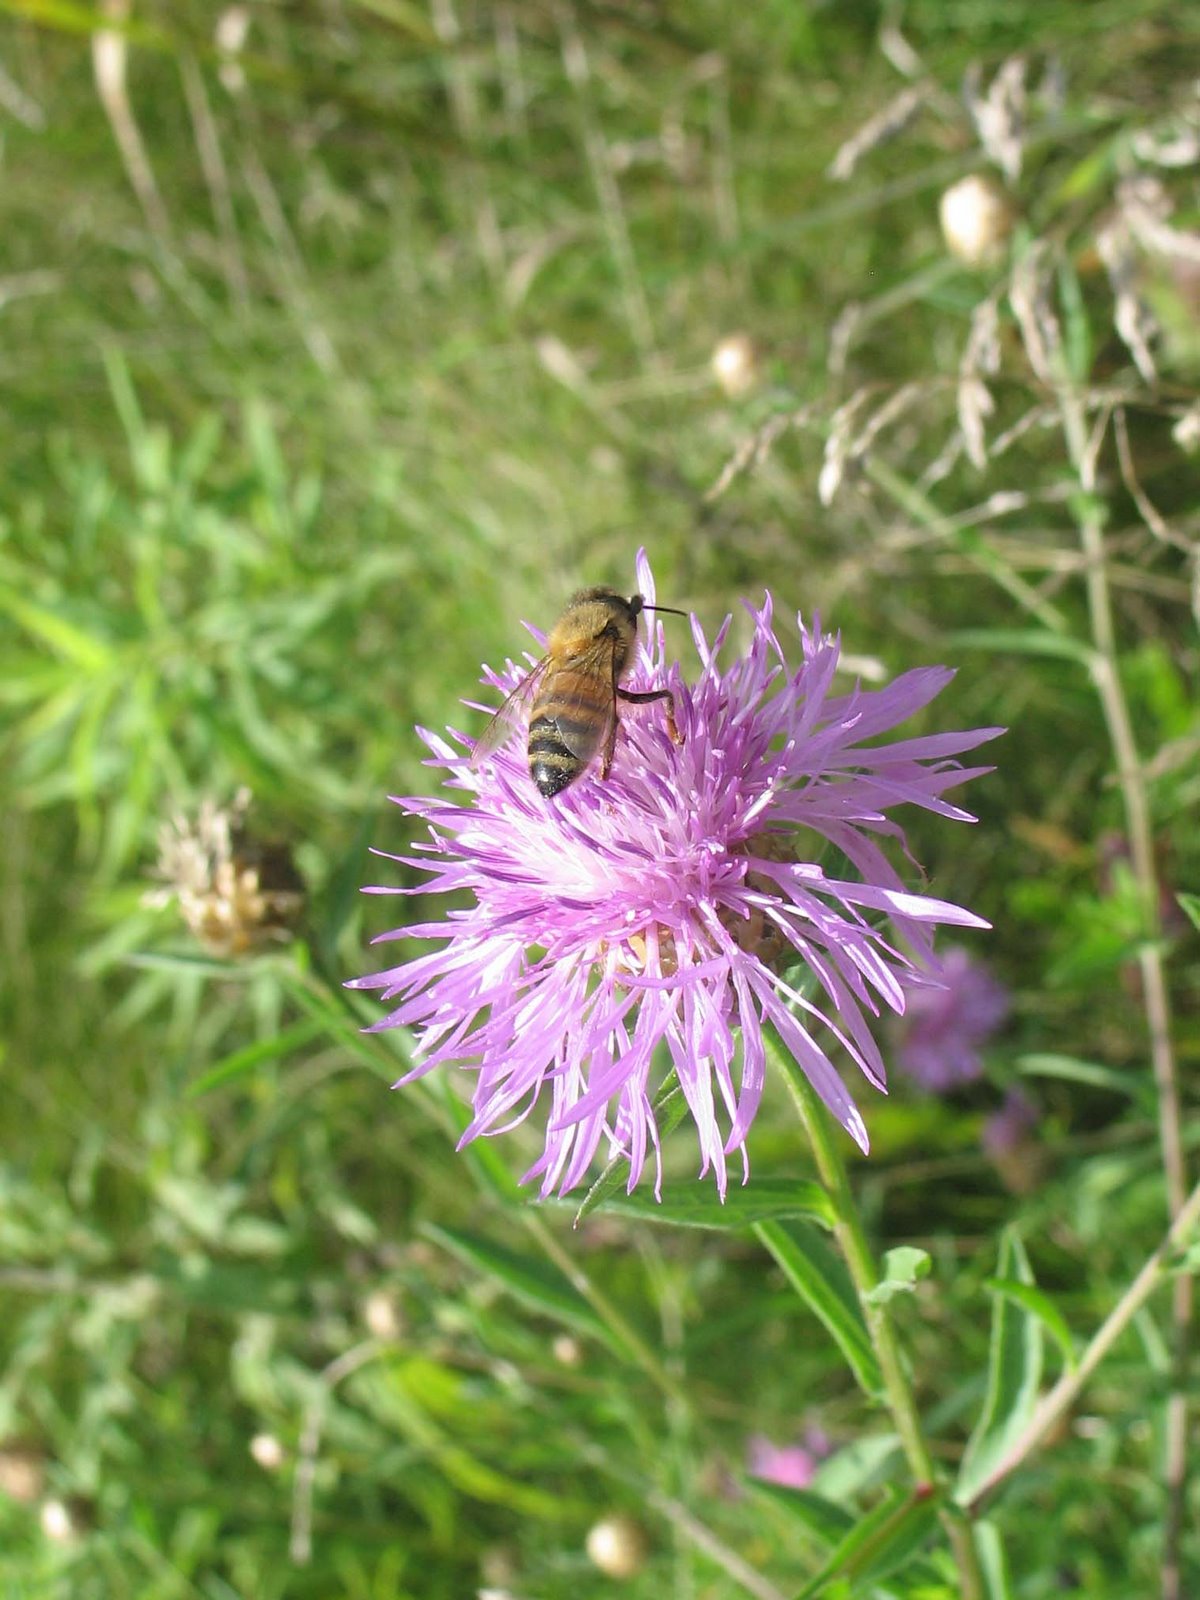 [Bee+on+purple+flower.jpg]